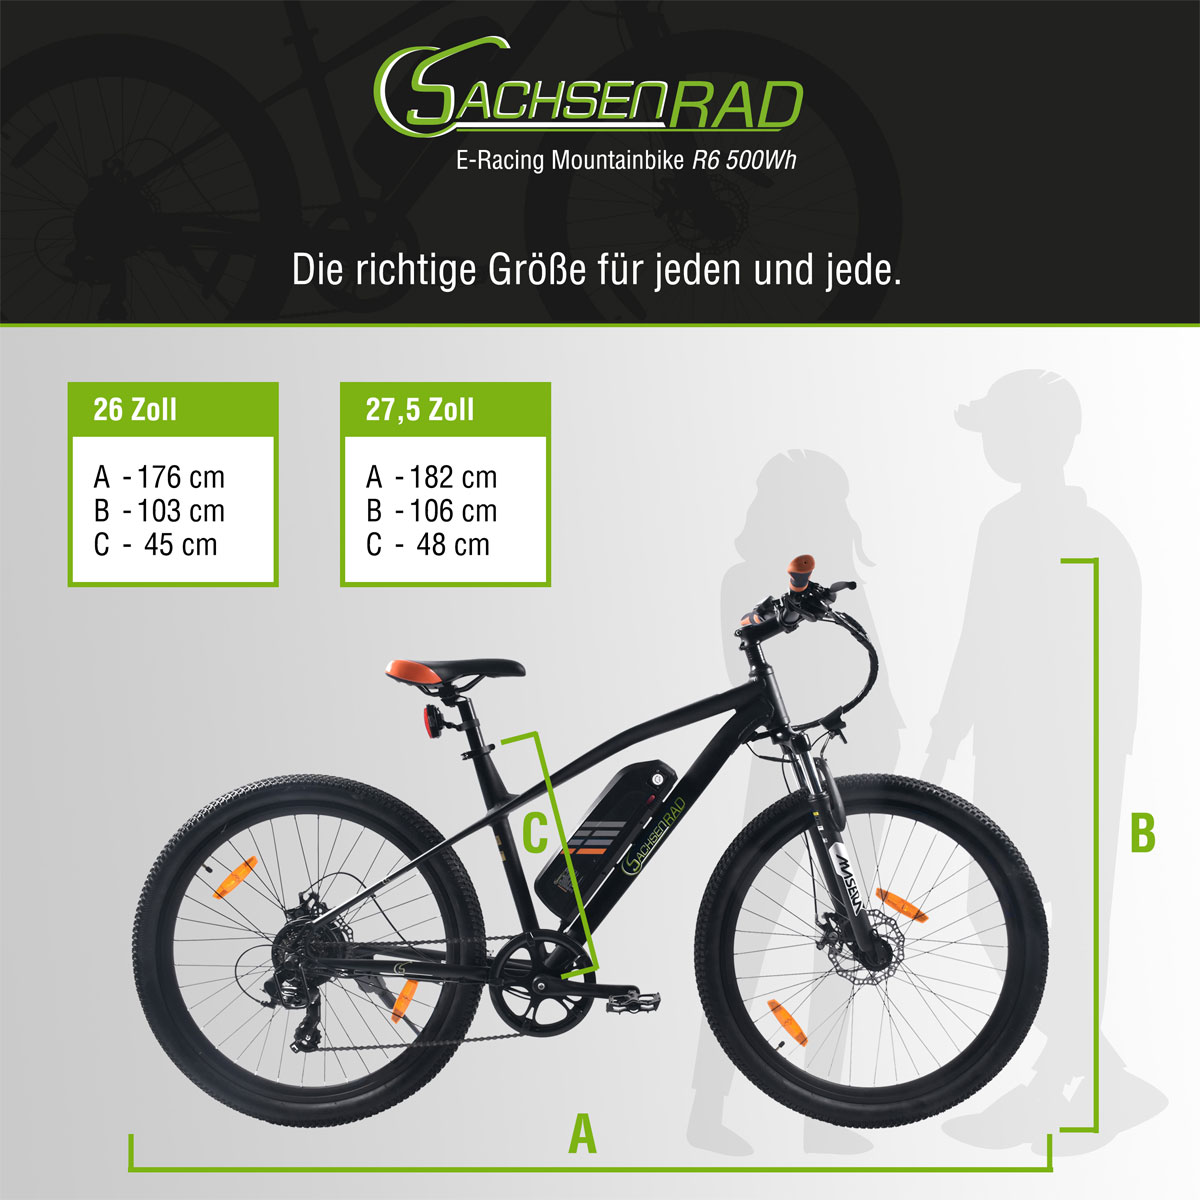 SachsenRad E-Racing Mountain Bike R6 500Wh 13,4Ah E-Bike 26" ca.150 KM Reichweite